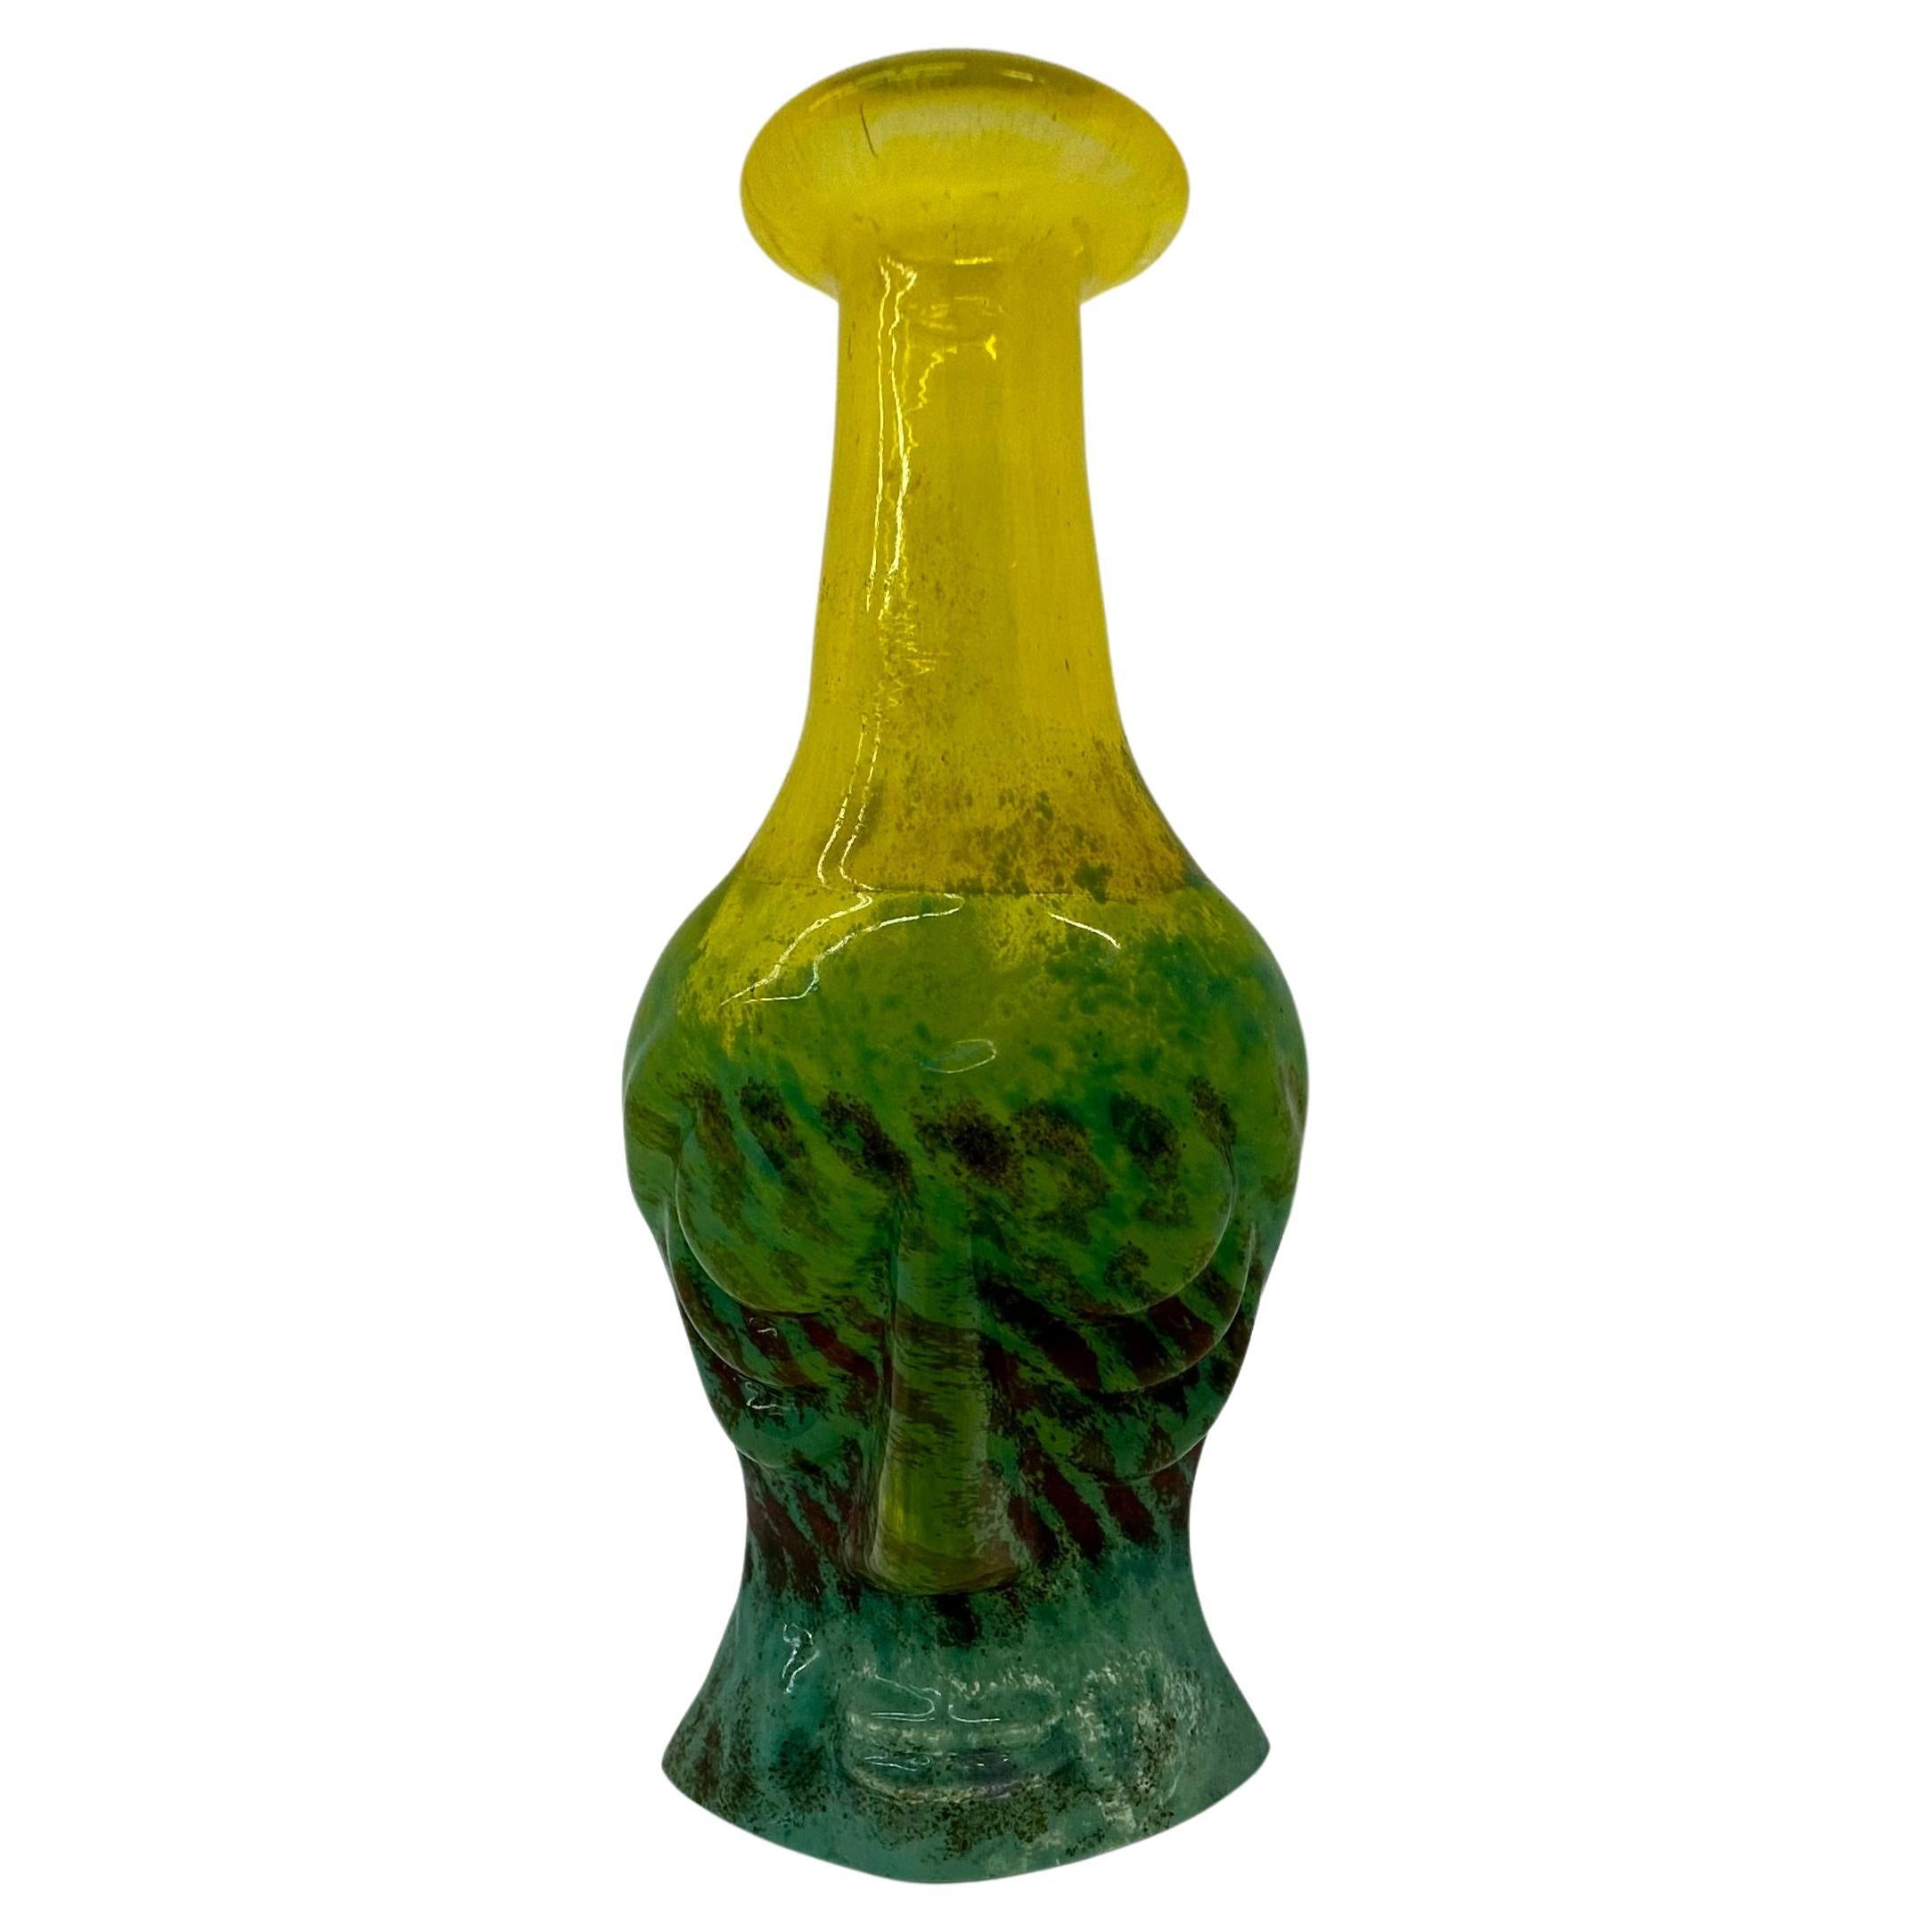 Rare Kjell Engman for Kosta Boda Sweden miniature Rio face vase